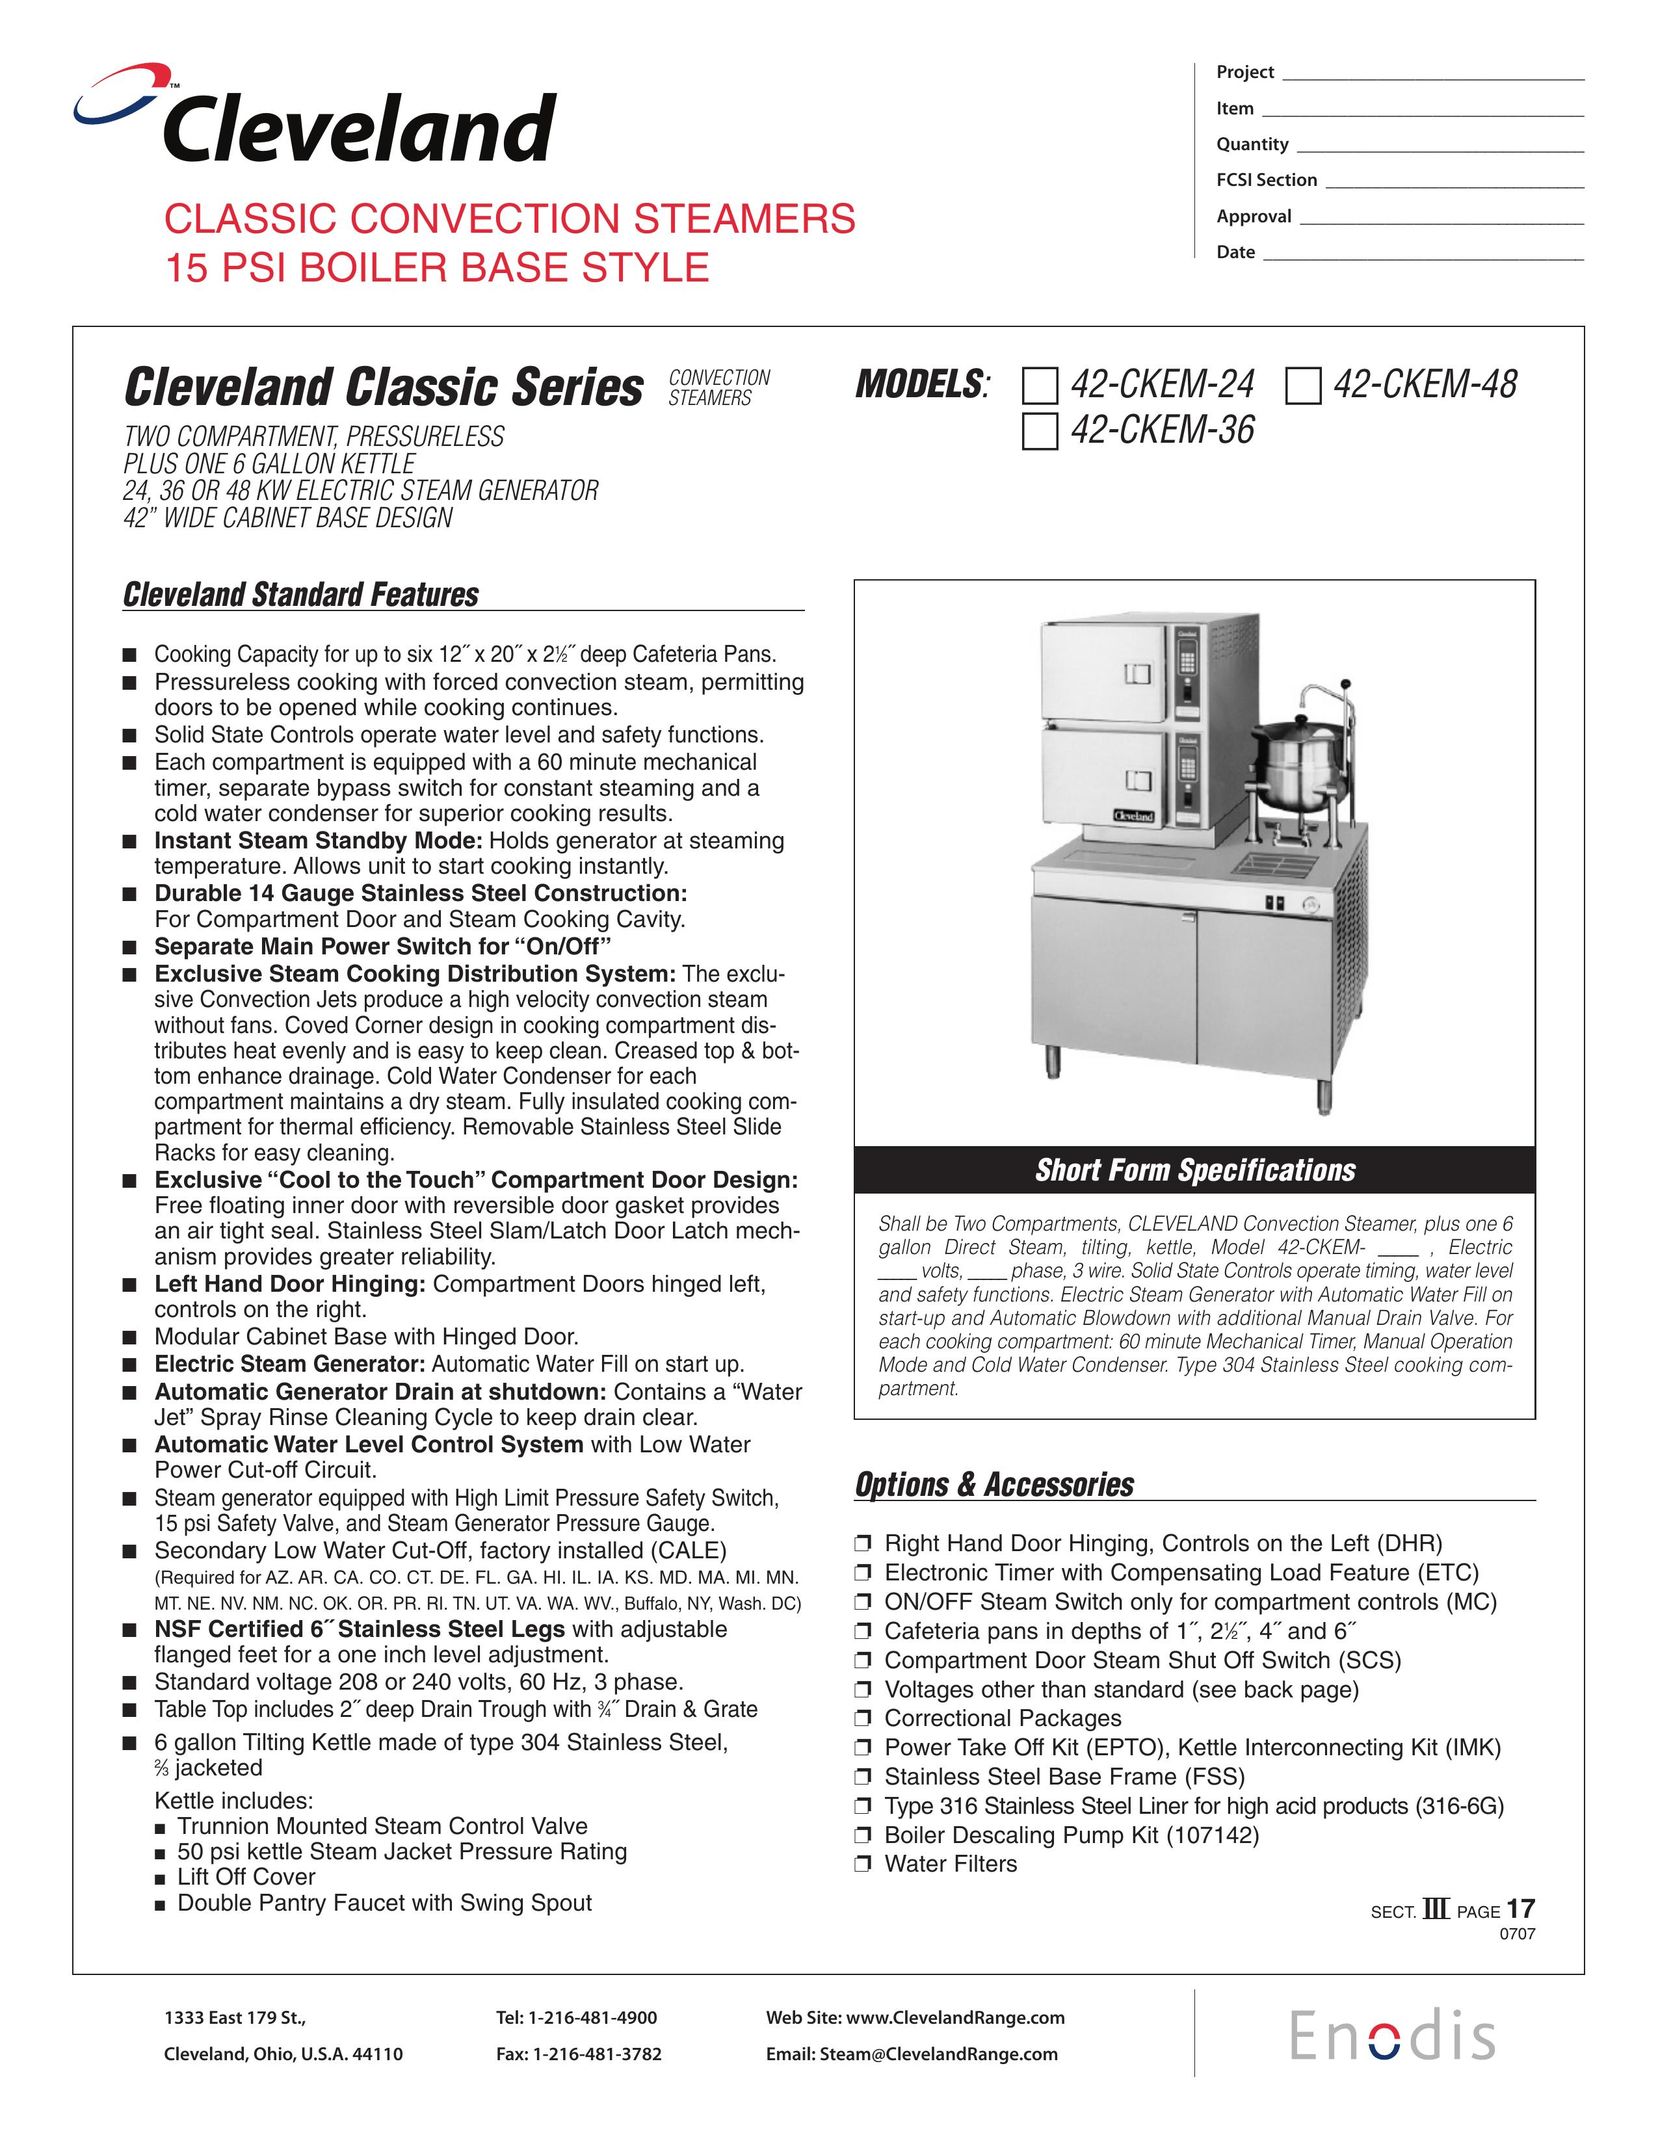 Cleveland Range 42-CKEM-48 Electric Steamer User Manual